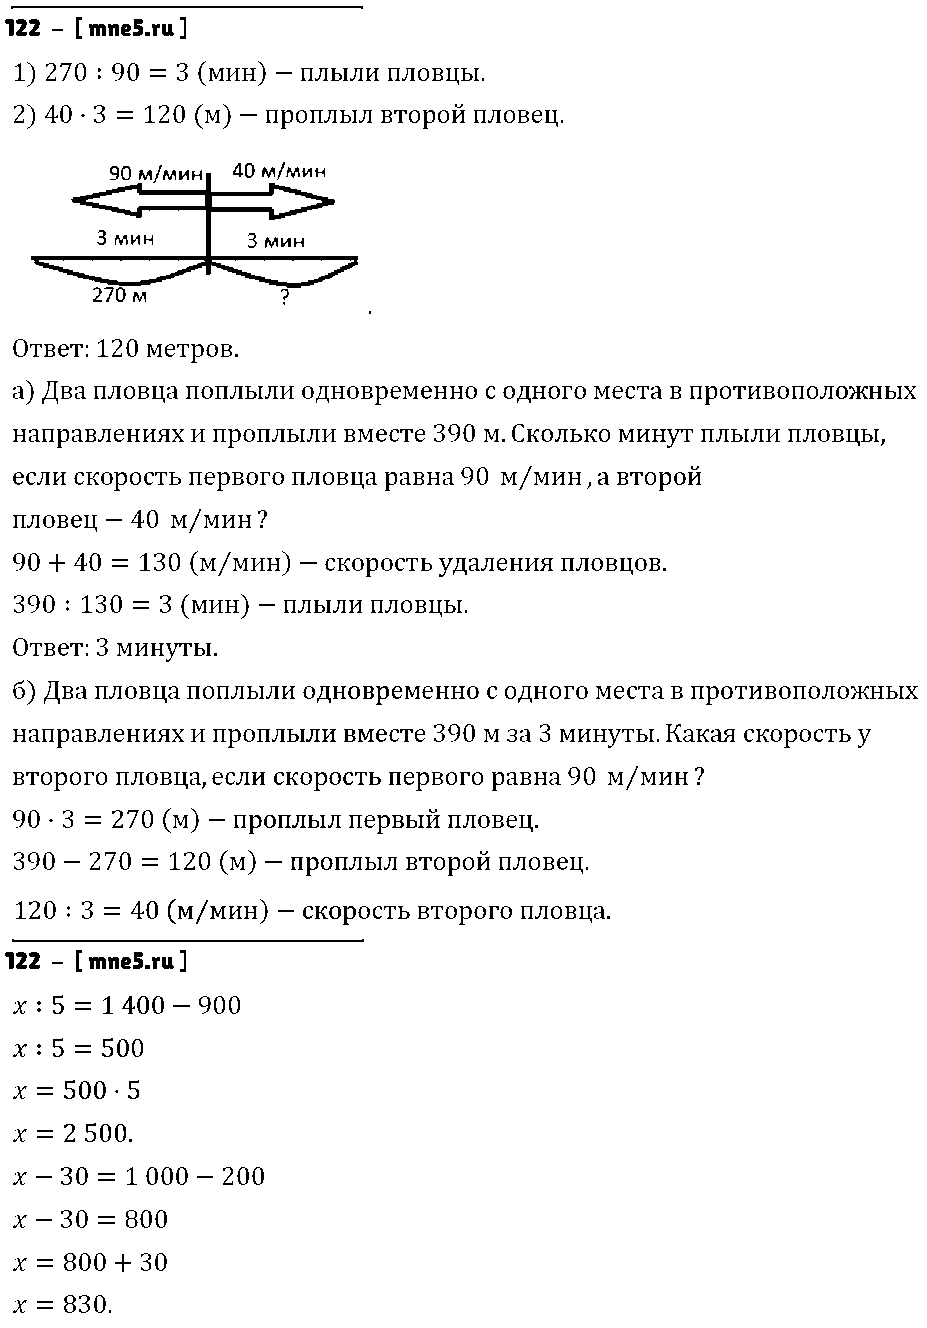 ГДЗ Математика 4 класс - 122